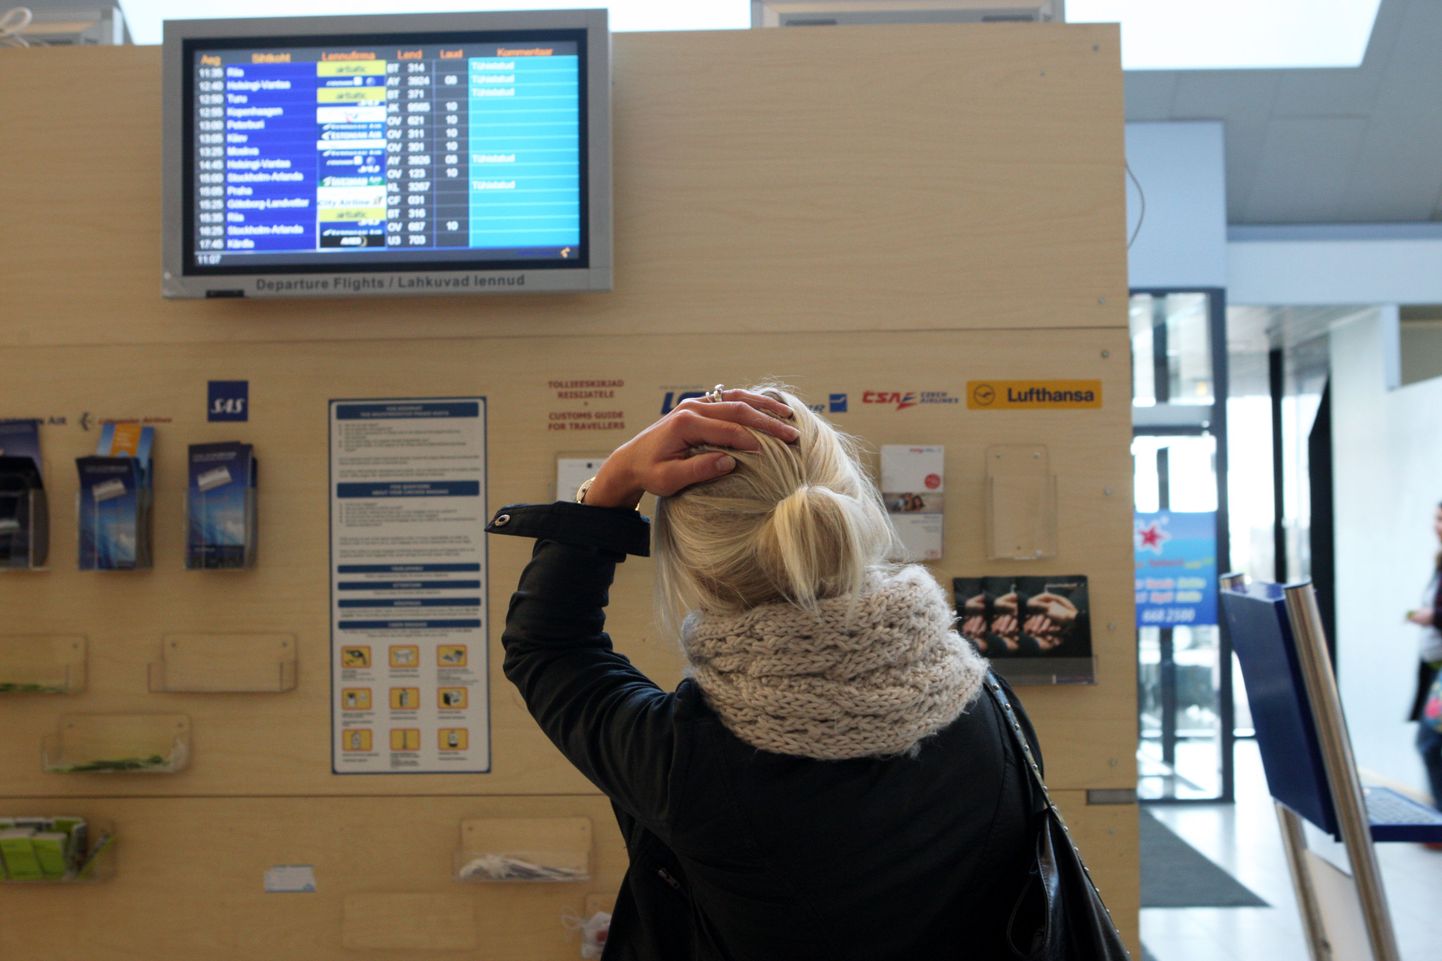 Tuhapilve tõttu reisist ilmajäänud saavad kaebuse esitamiseks abi Euroopa tarbijakaitsekeskuse veebist.